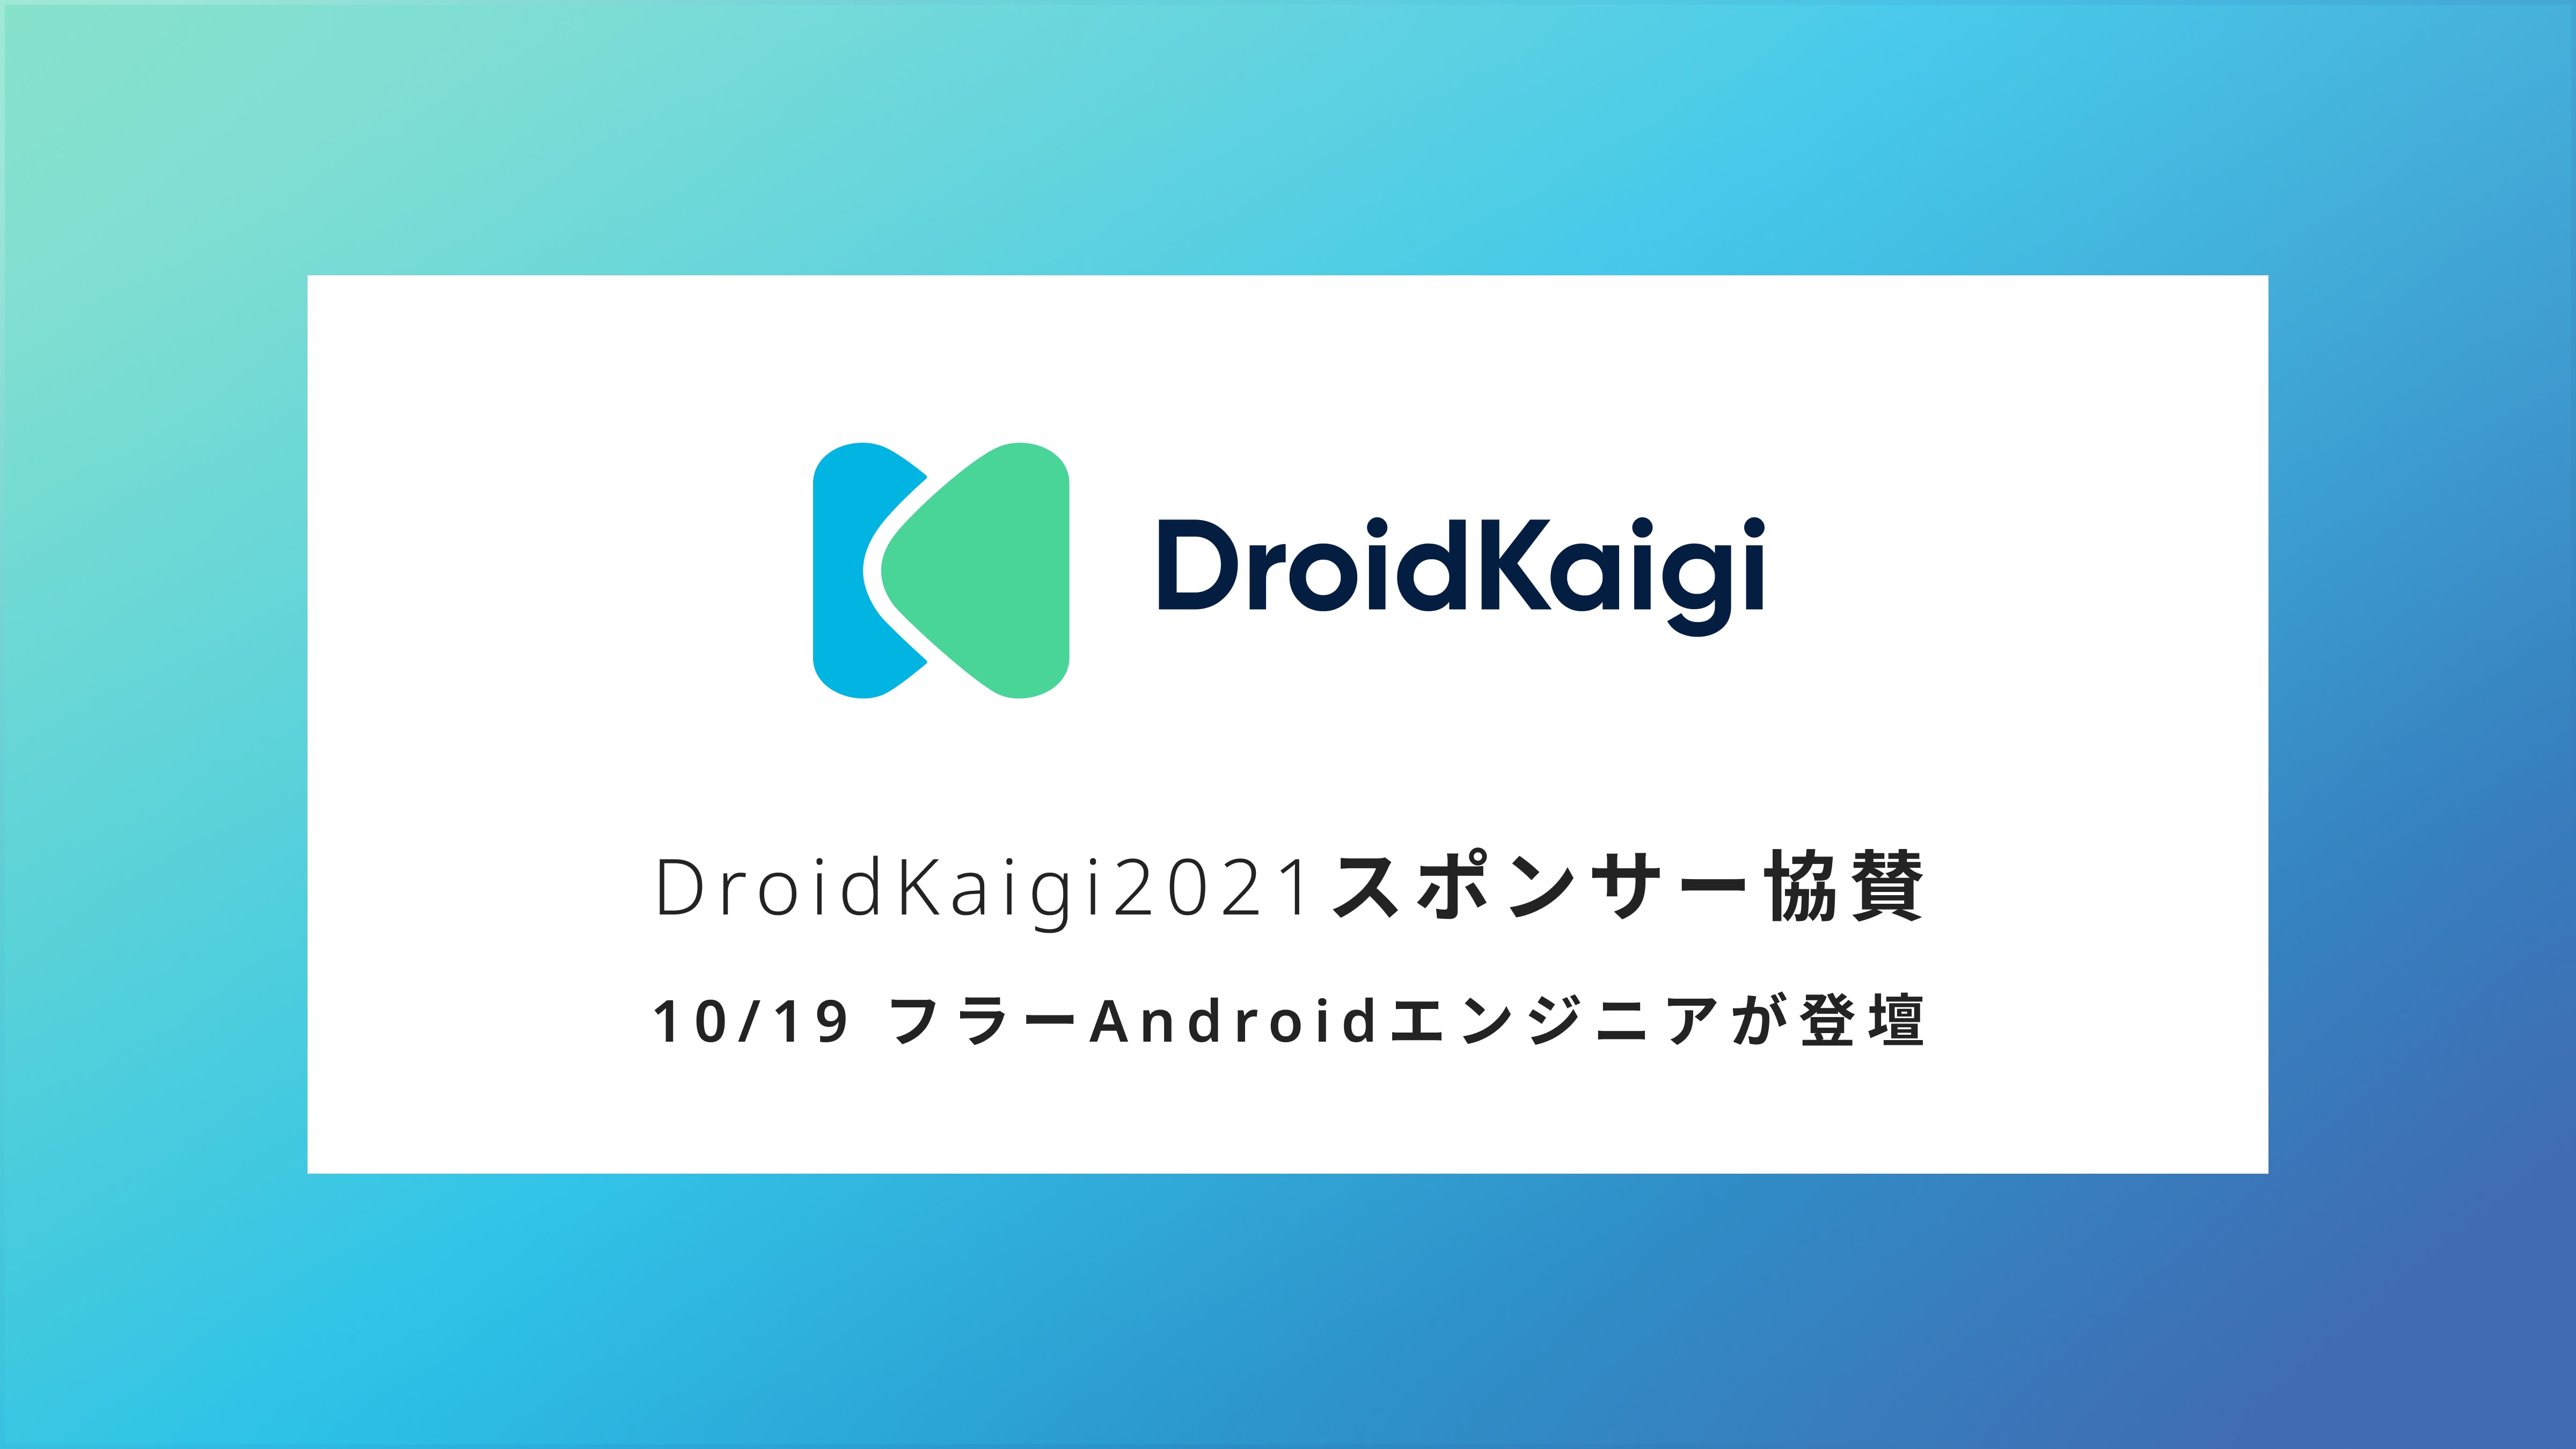 日本最大級のAndroidカンファレンス「DroidKaigi 2021」に協賛